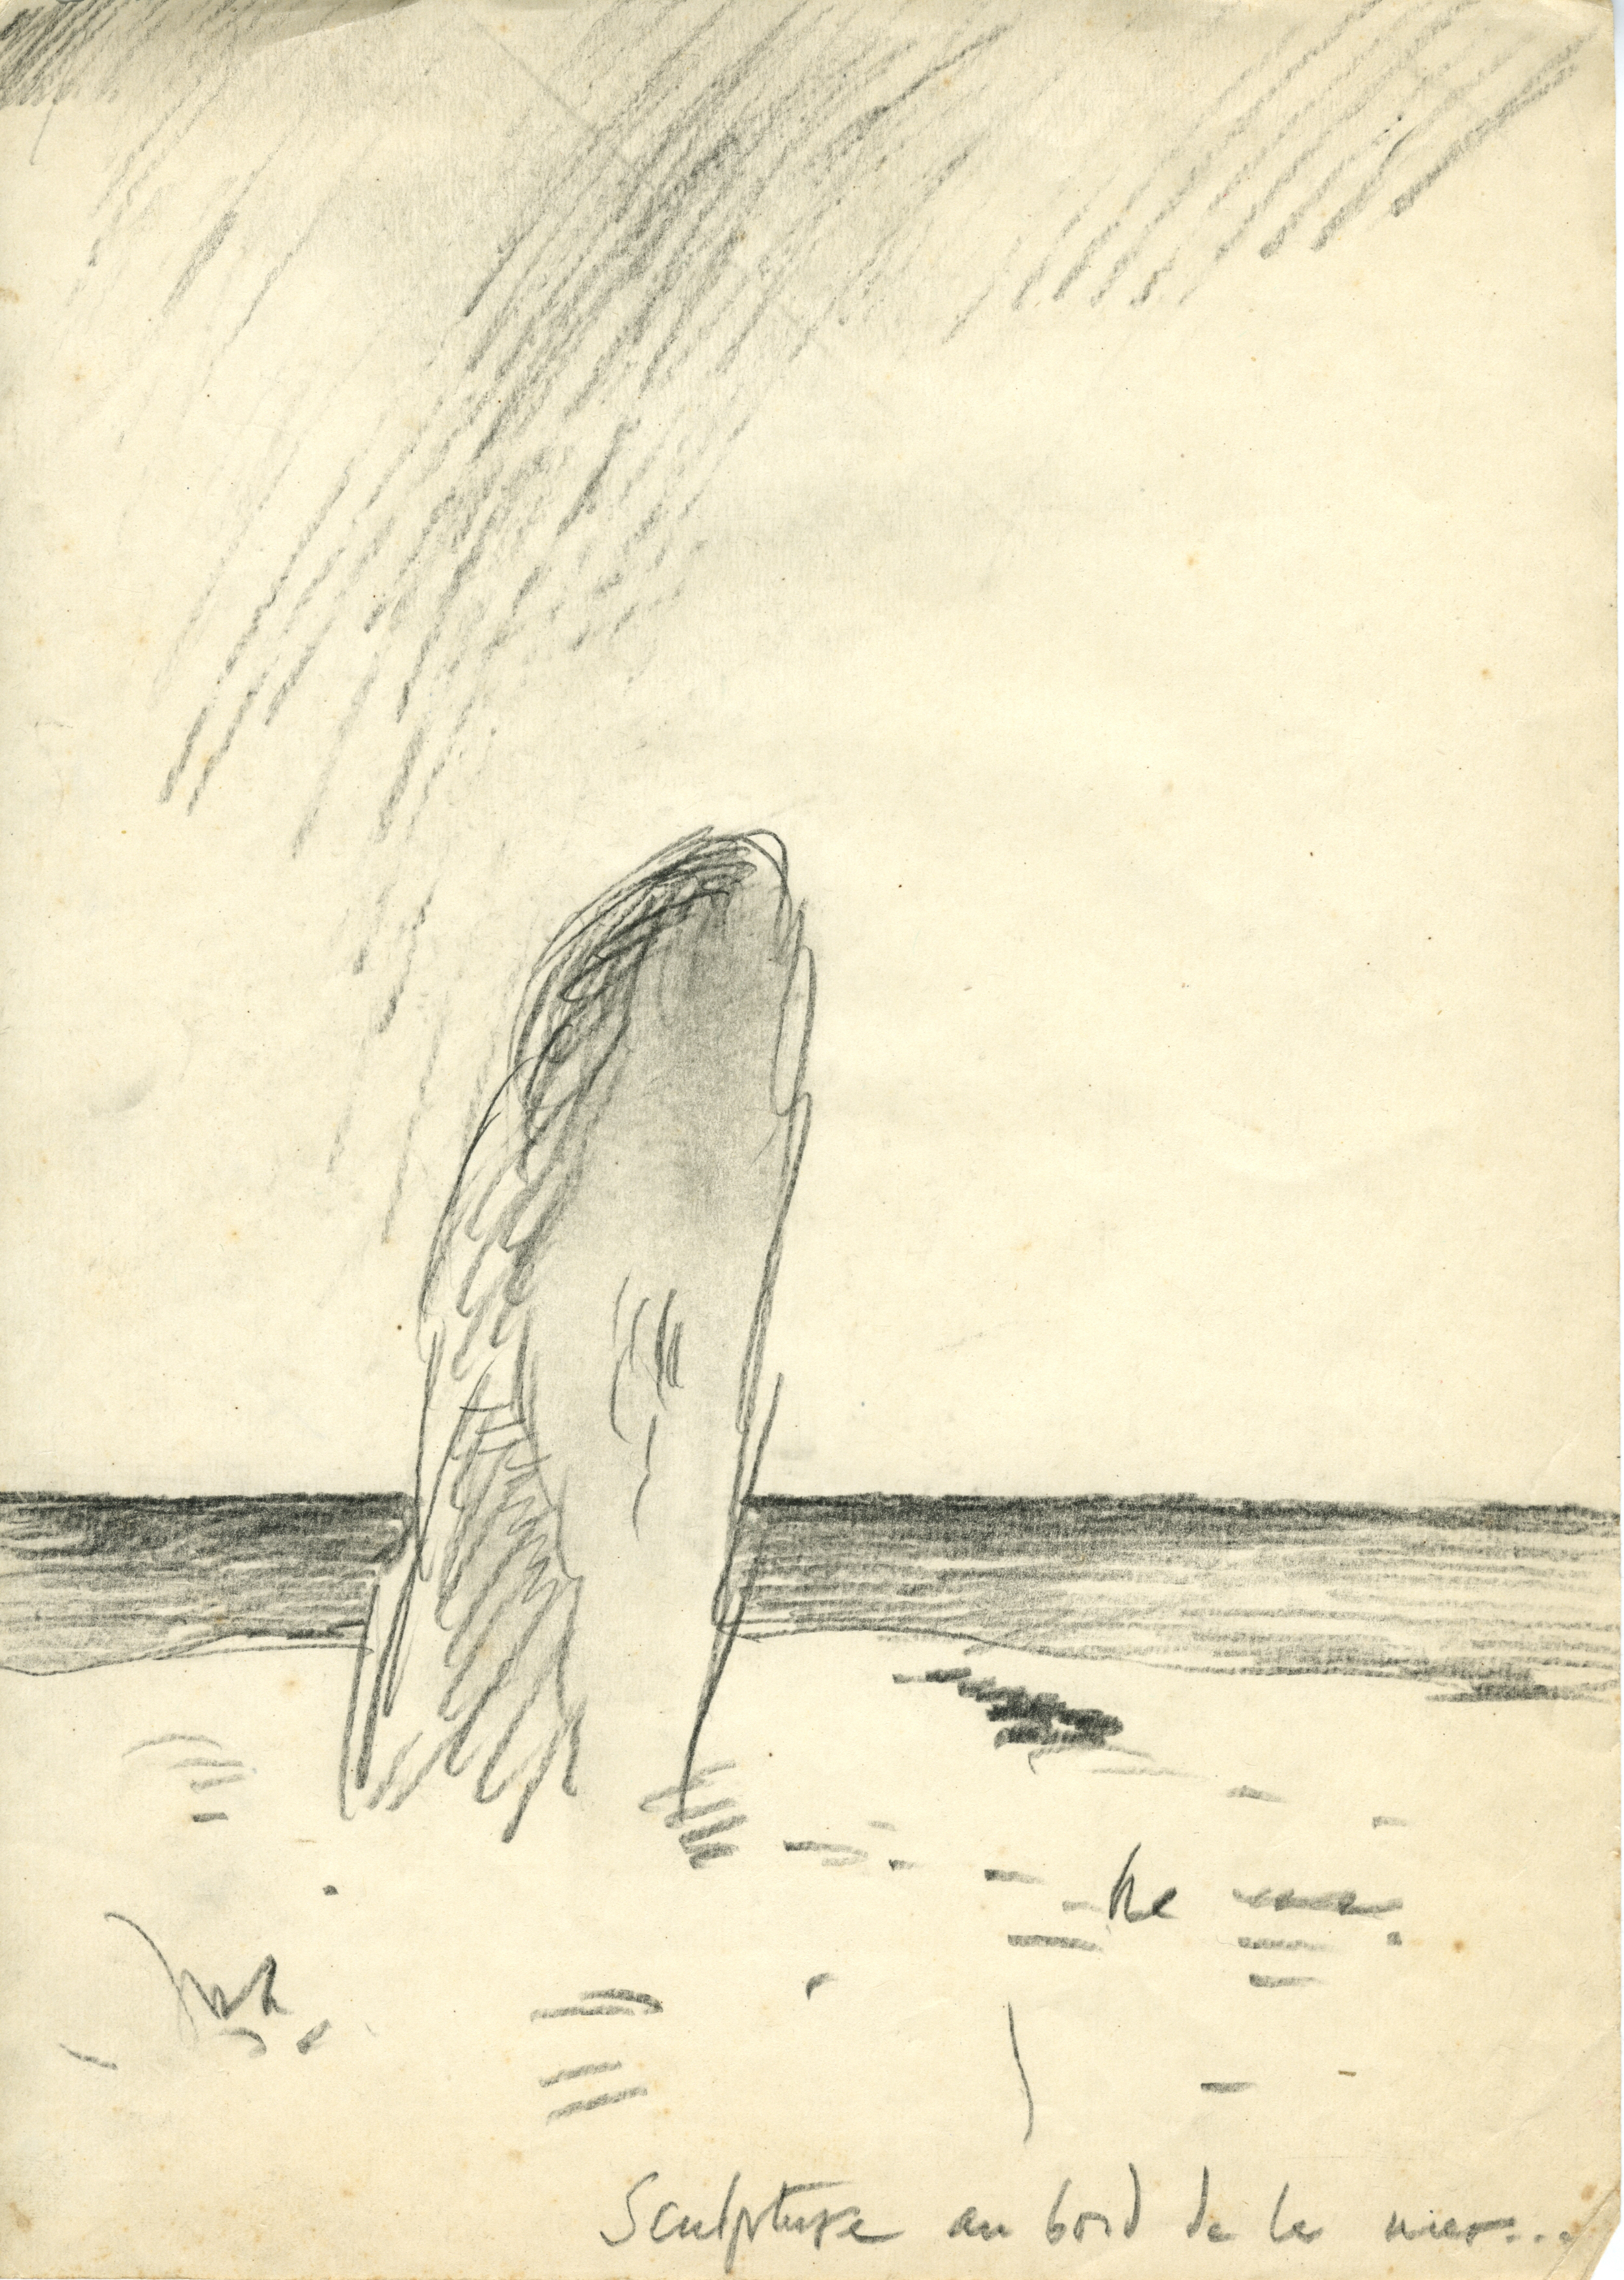 Sculpture au bord de la mer/de, 1976